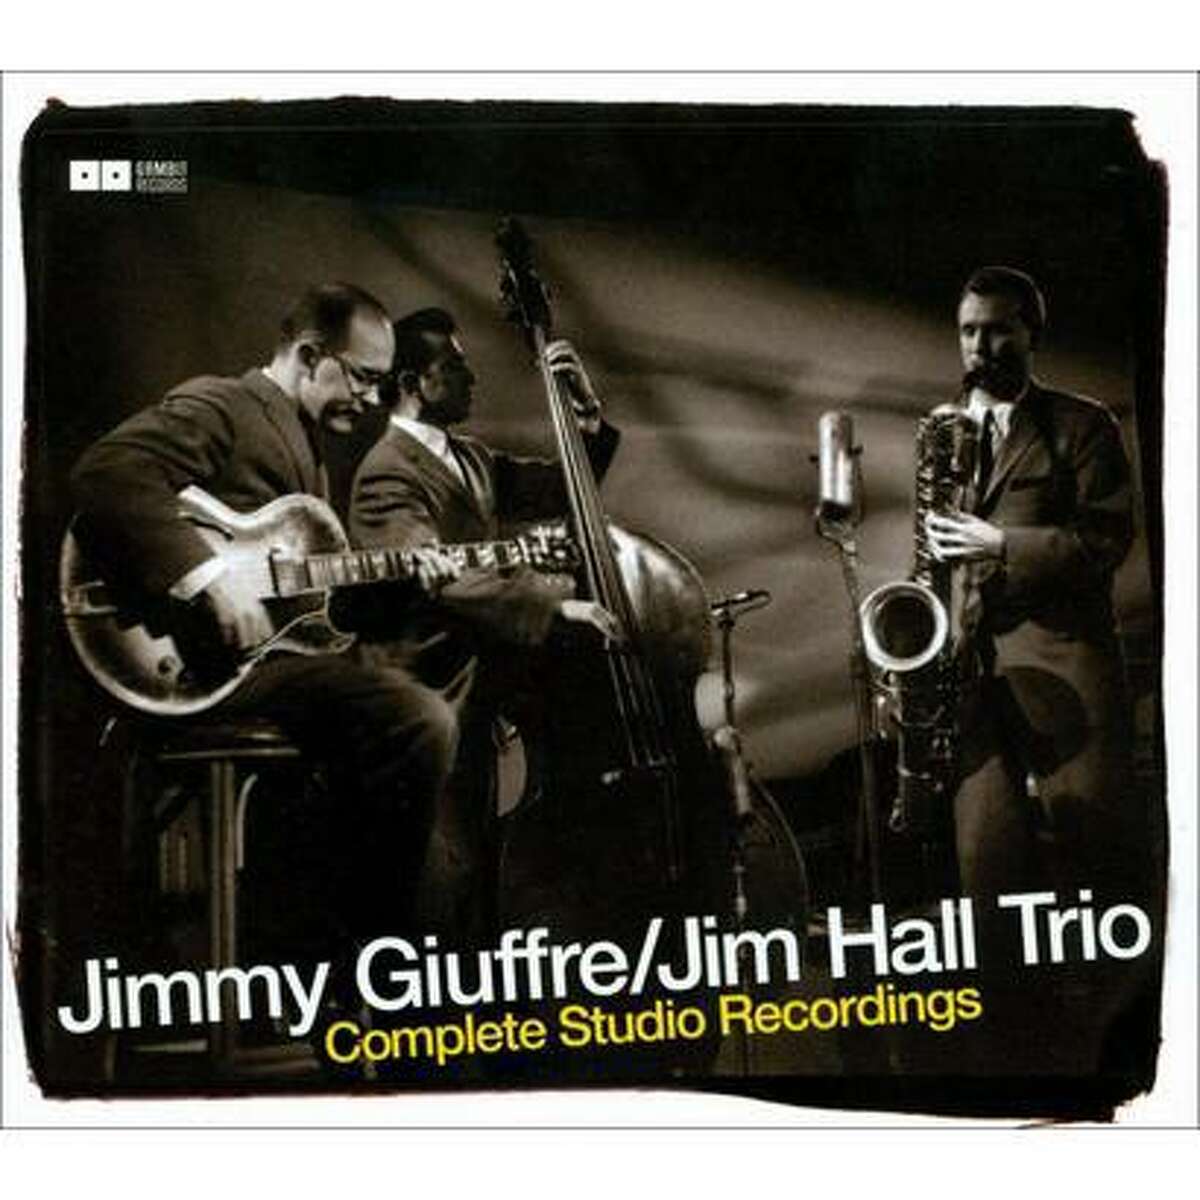 album cover for the Jimmy Giuffre Jim Hall Trio album The Complete Recordings